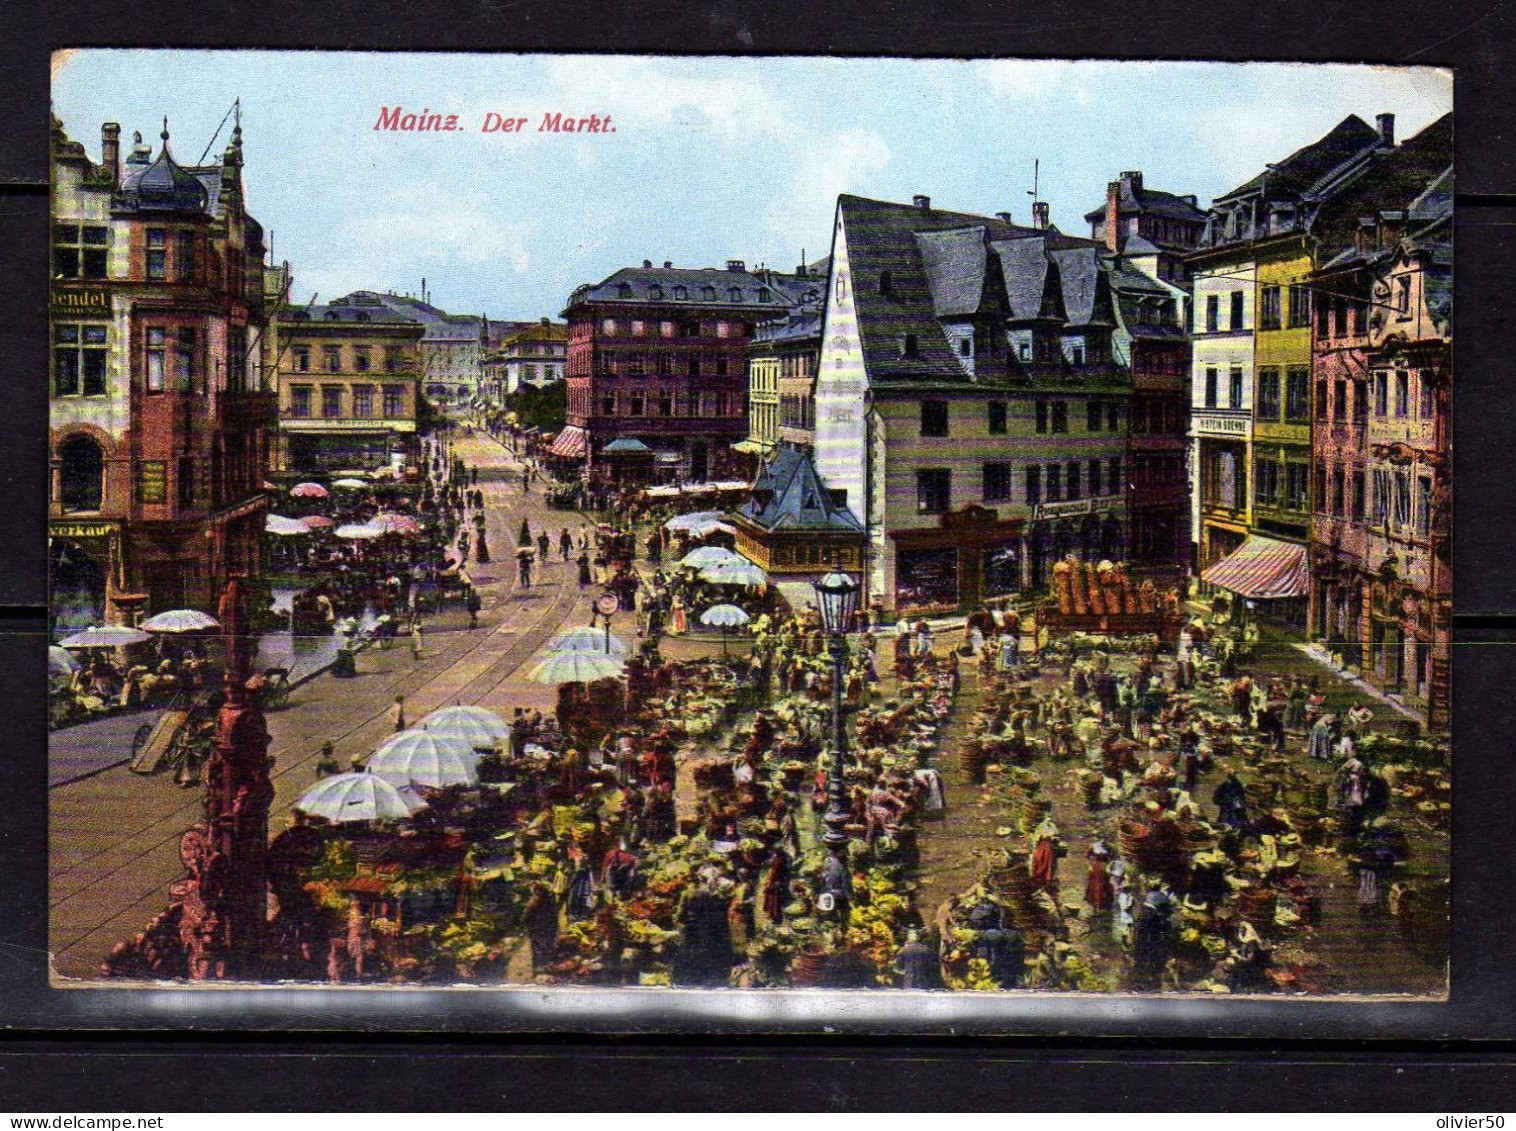 Mainz - Der Markt - Mainz